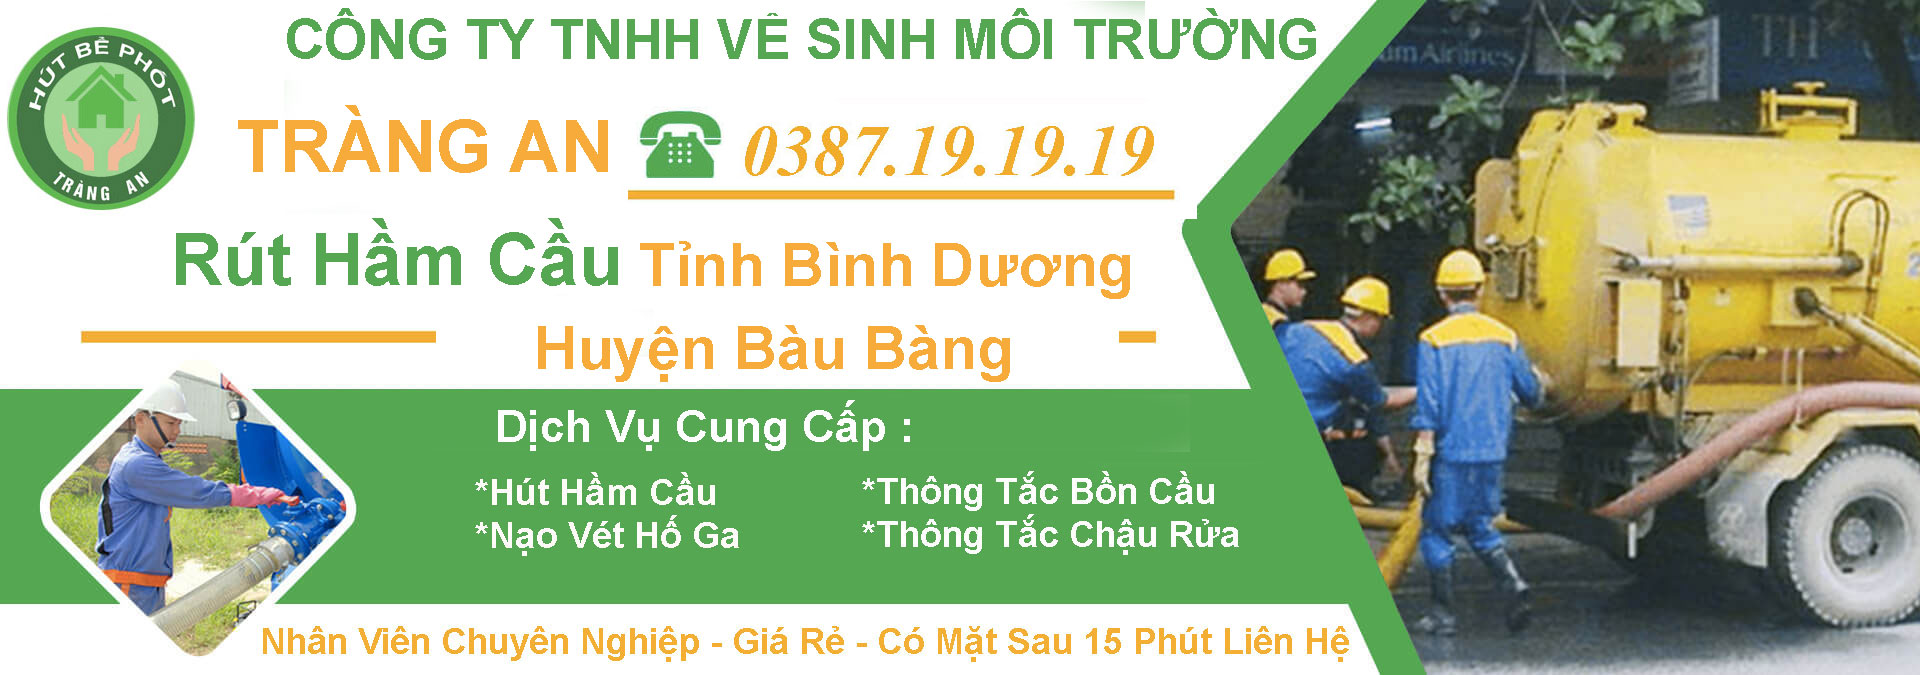 Hut Ham Cau Tinh Binh Duong Huyen Bau Bang